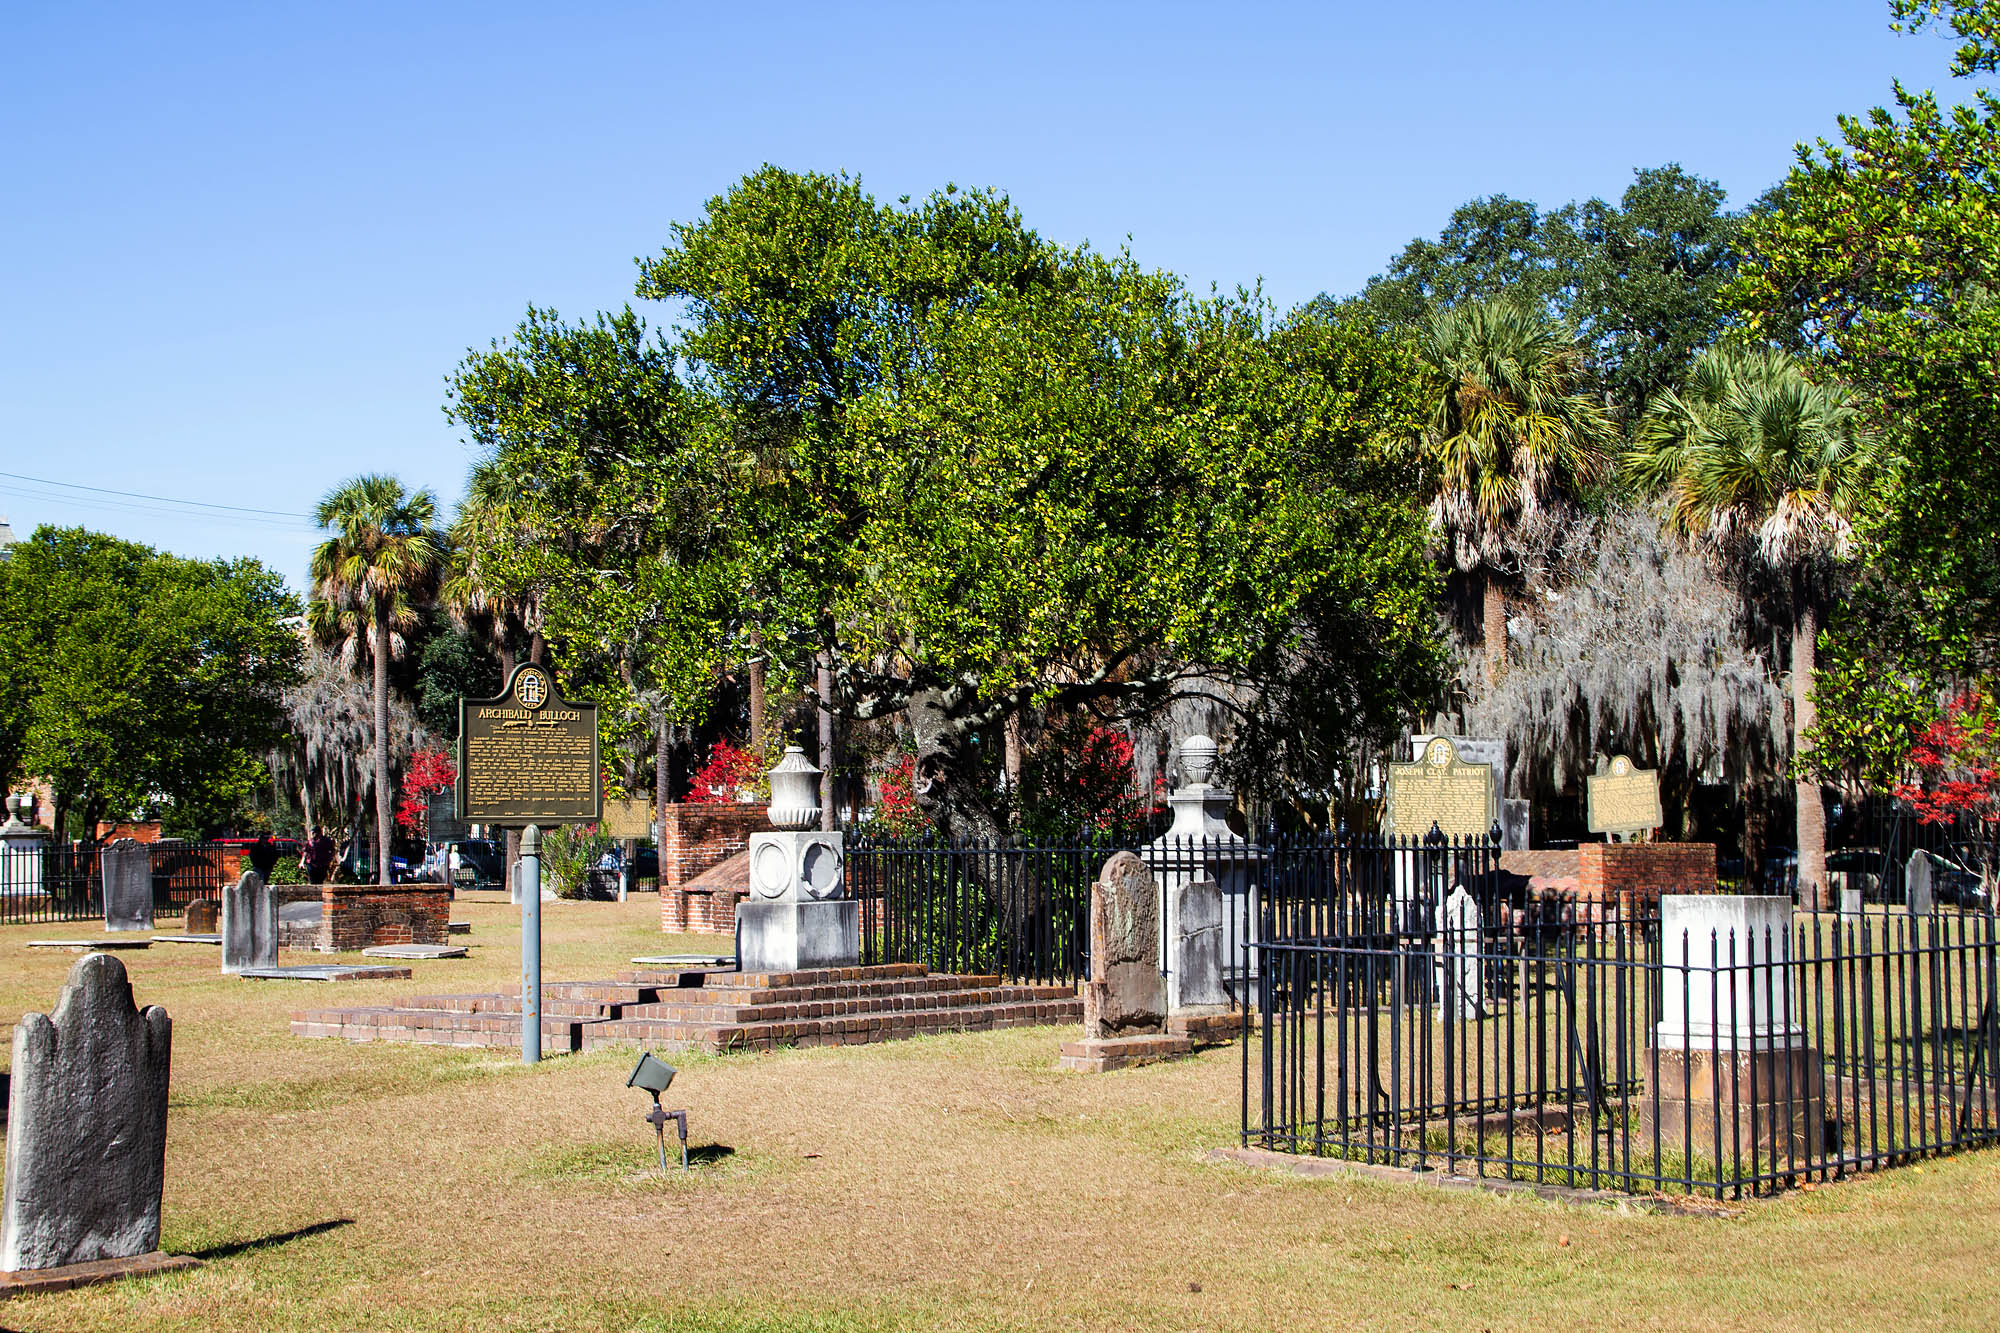 Fenced Graves in Savannah